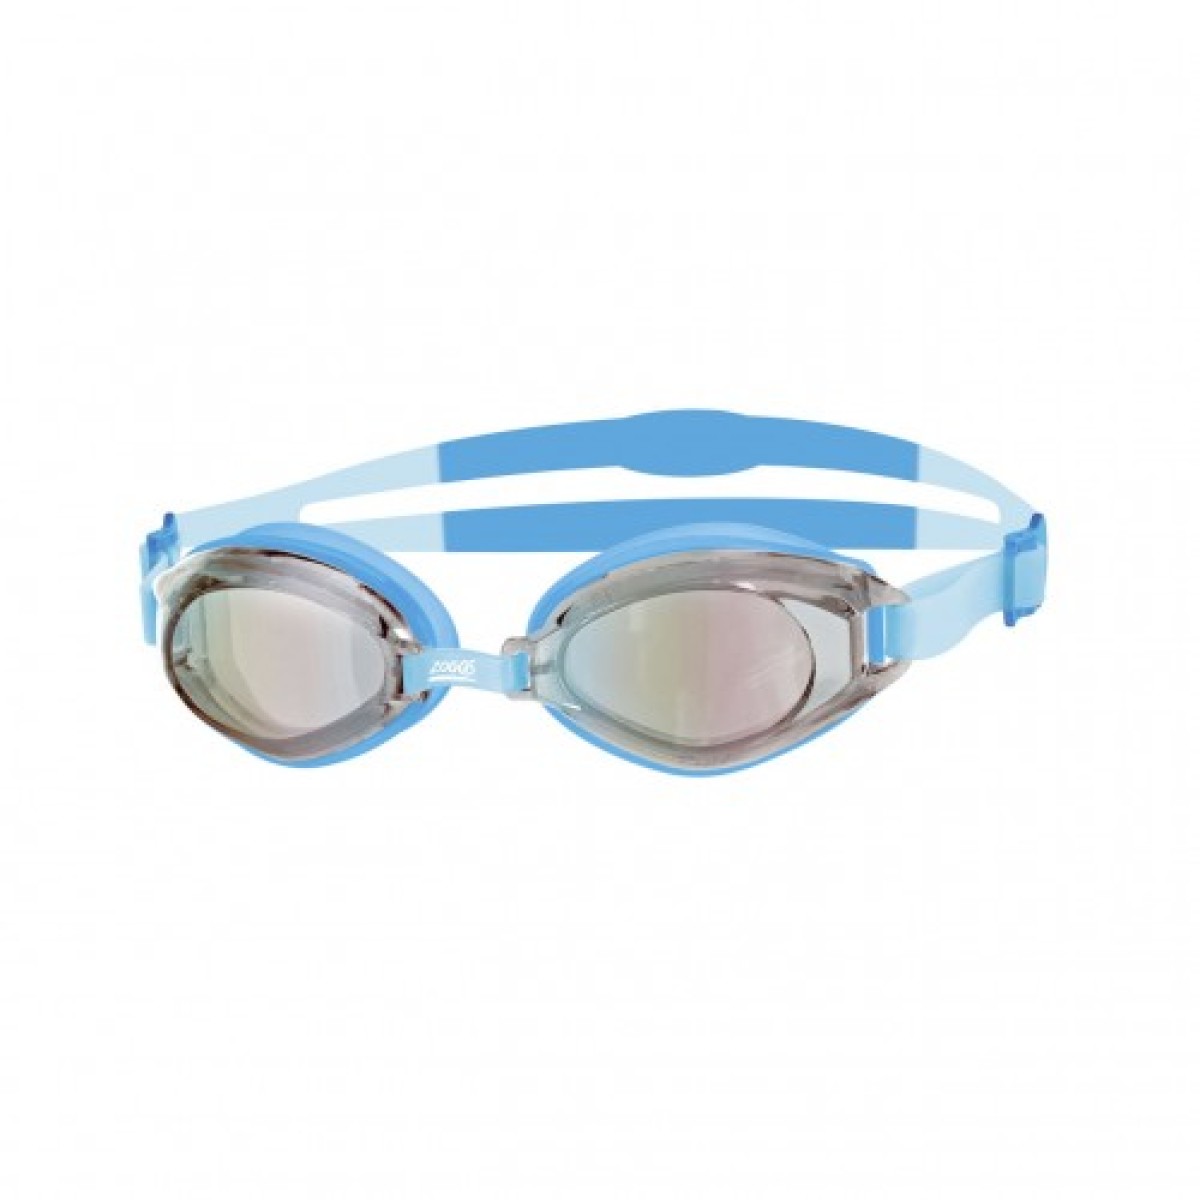 Swimming goggles Endura Mirror blue/silver ZOGGS - view 1